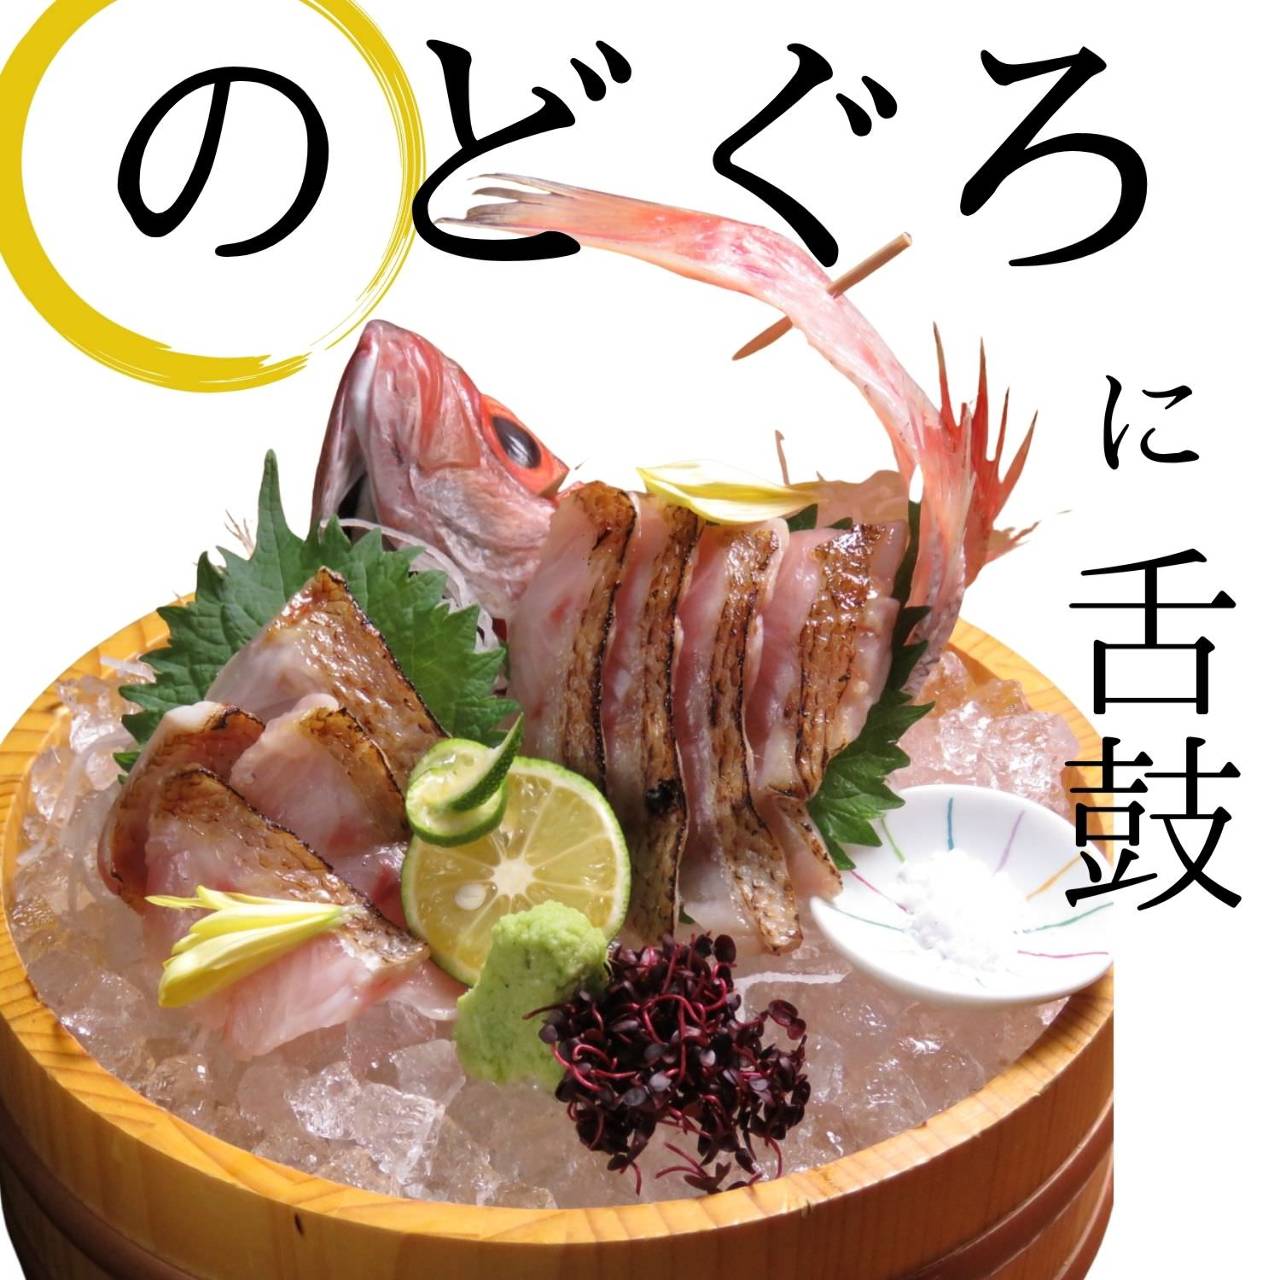 旬魚季菜 とと桜